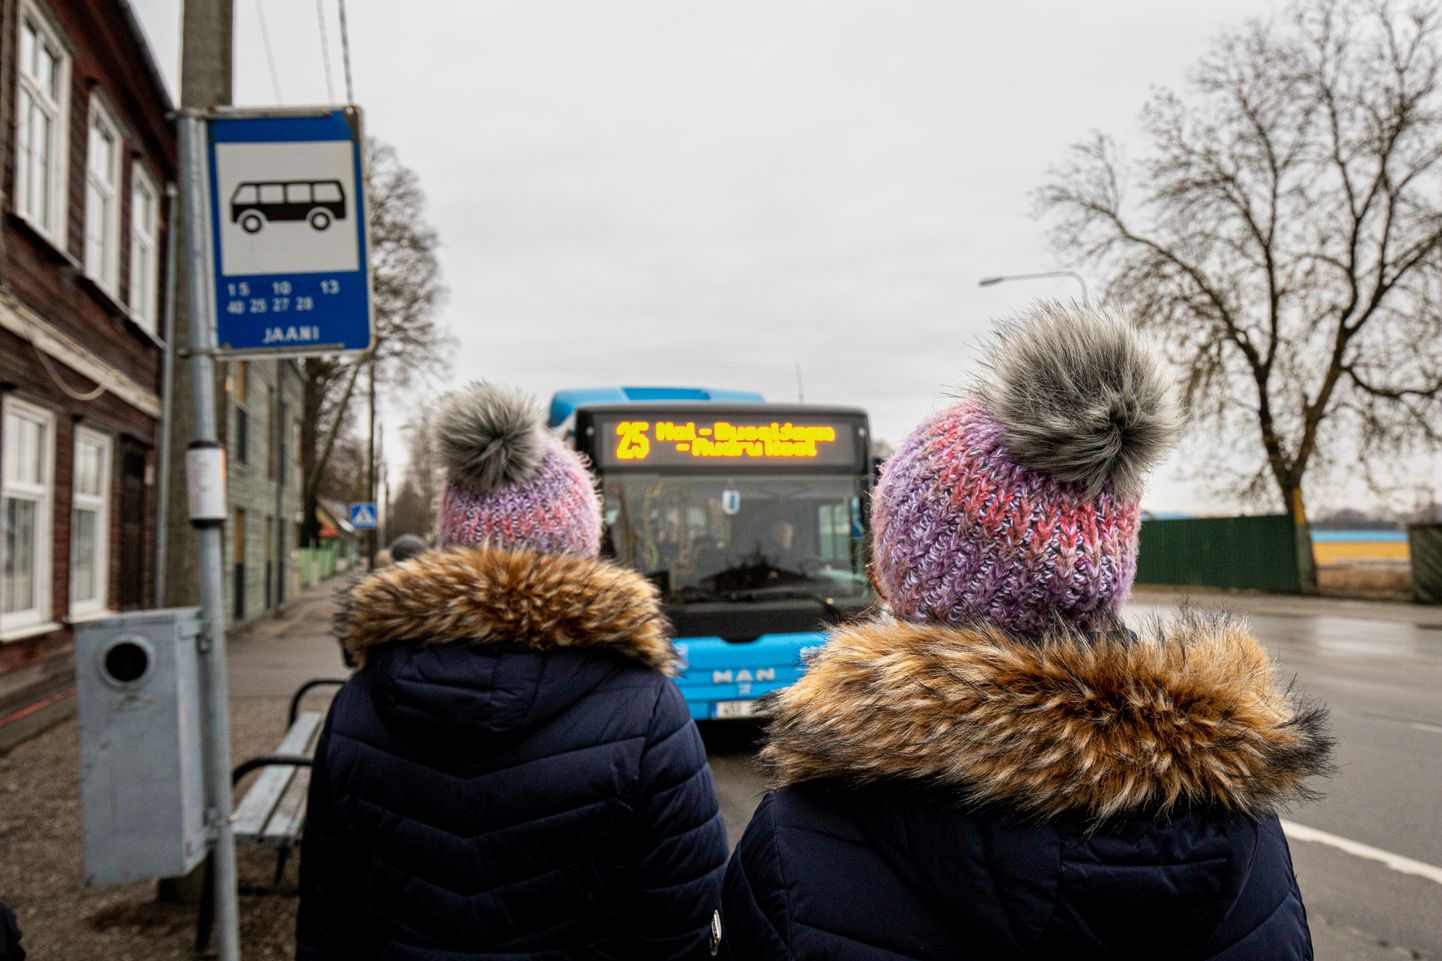 Pilt on illustreeriv. Pärnu ühistransport. 2019.